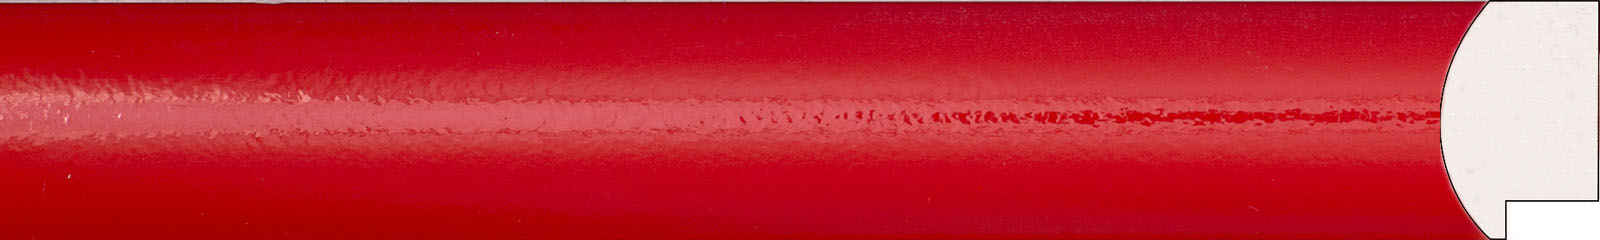 Картинный багет 1624 цвет красный